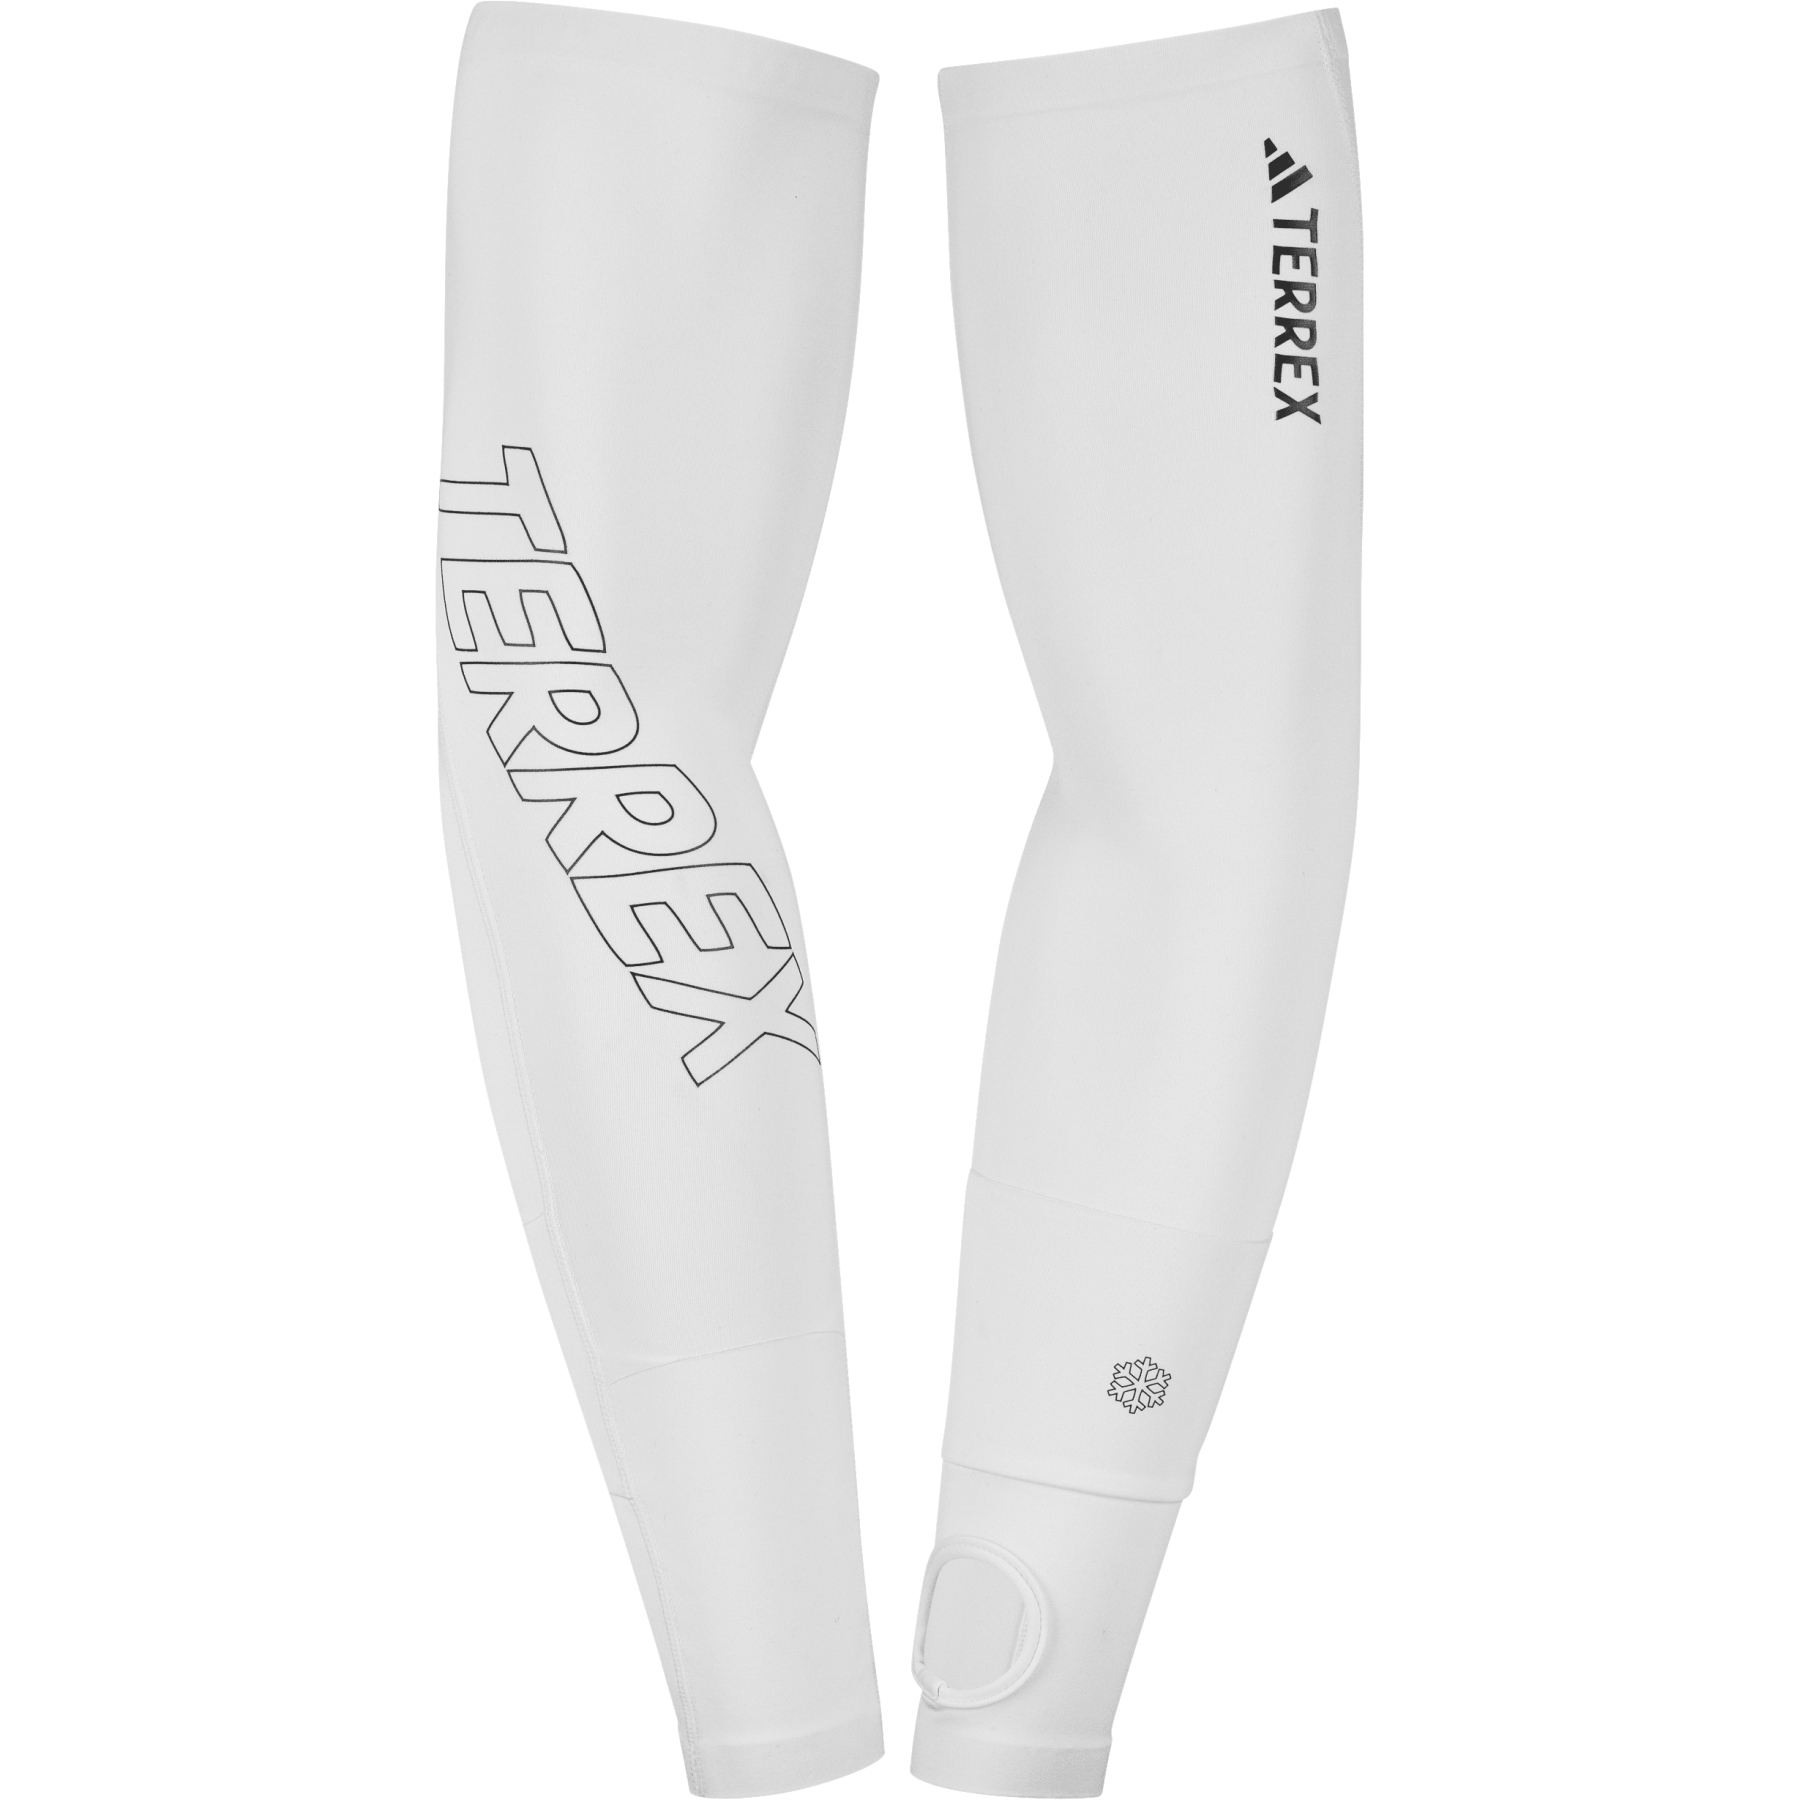 Produktbild von adidas TERREX Trail Running Armlinge - weiß/schwarz IQ2680